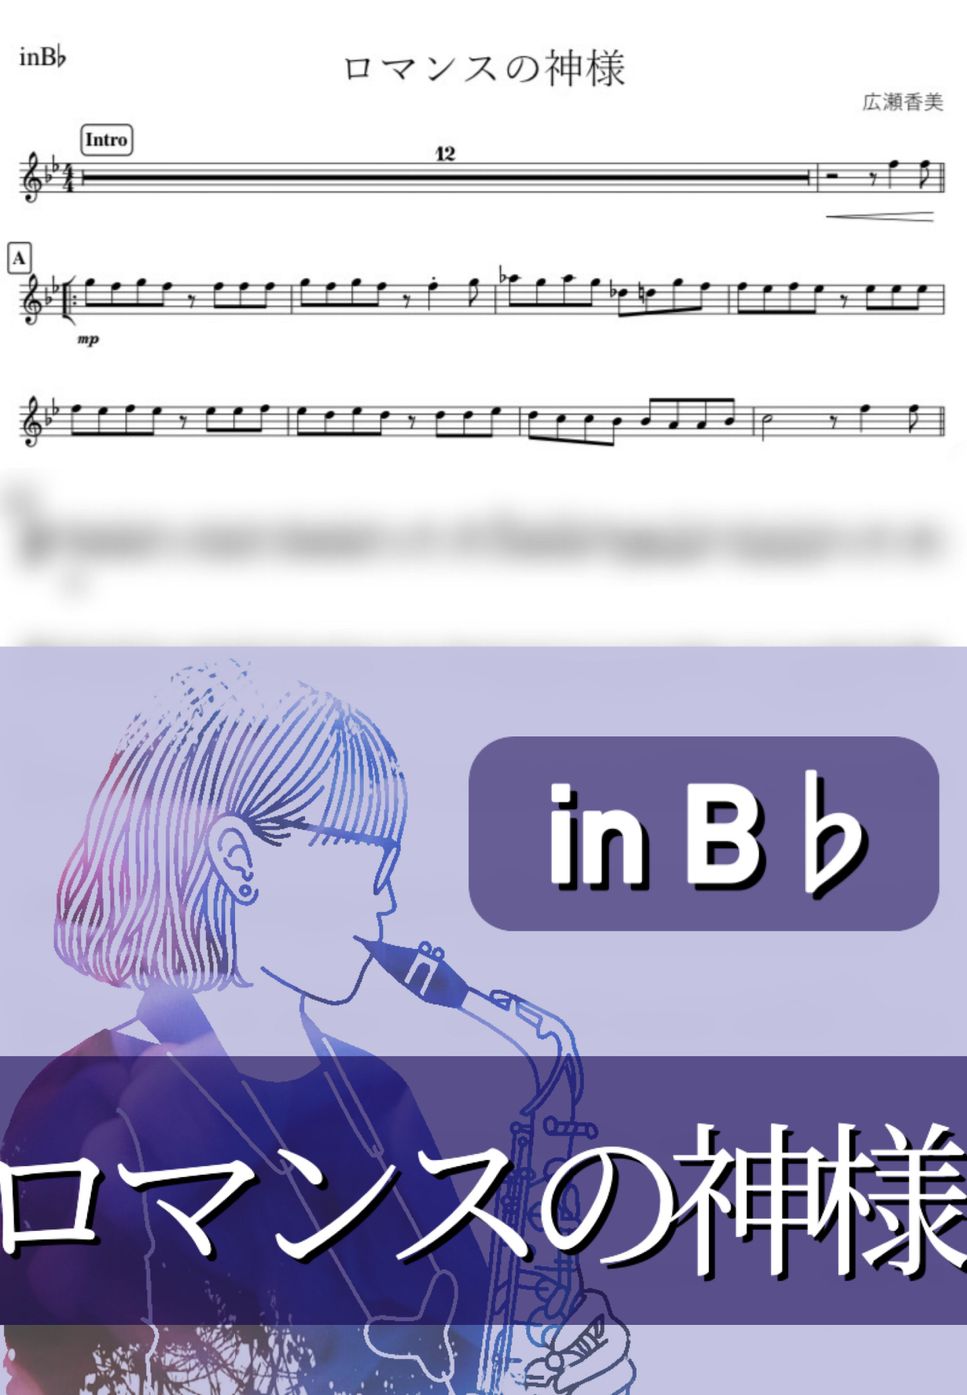 広瀬香美 - ロマンスの神様 (B♭) by kanamusic